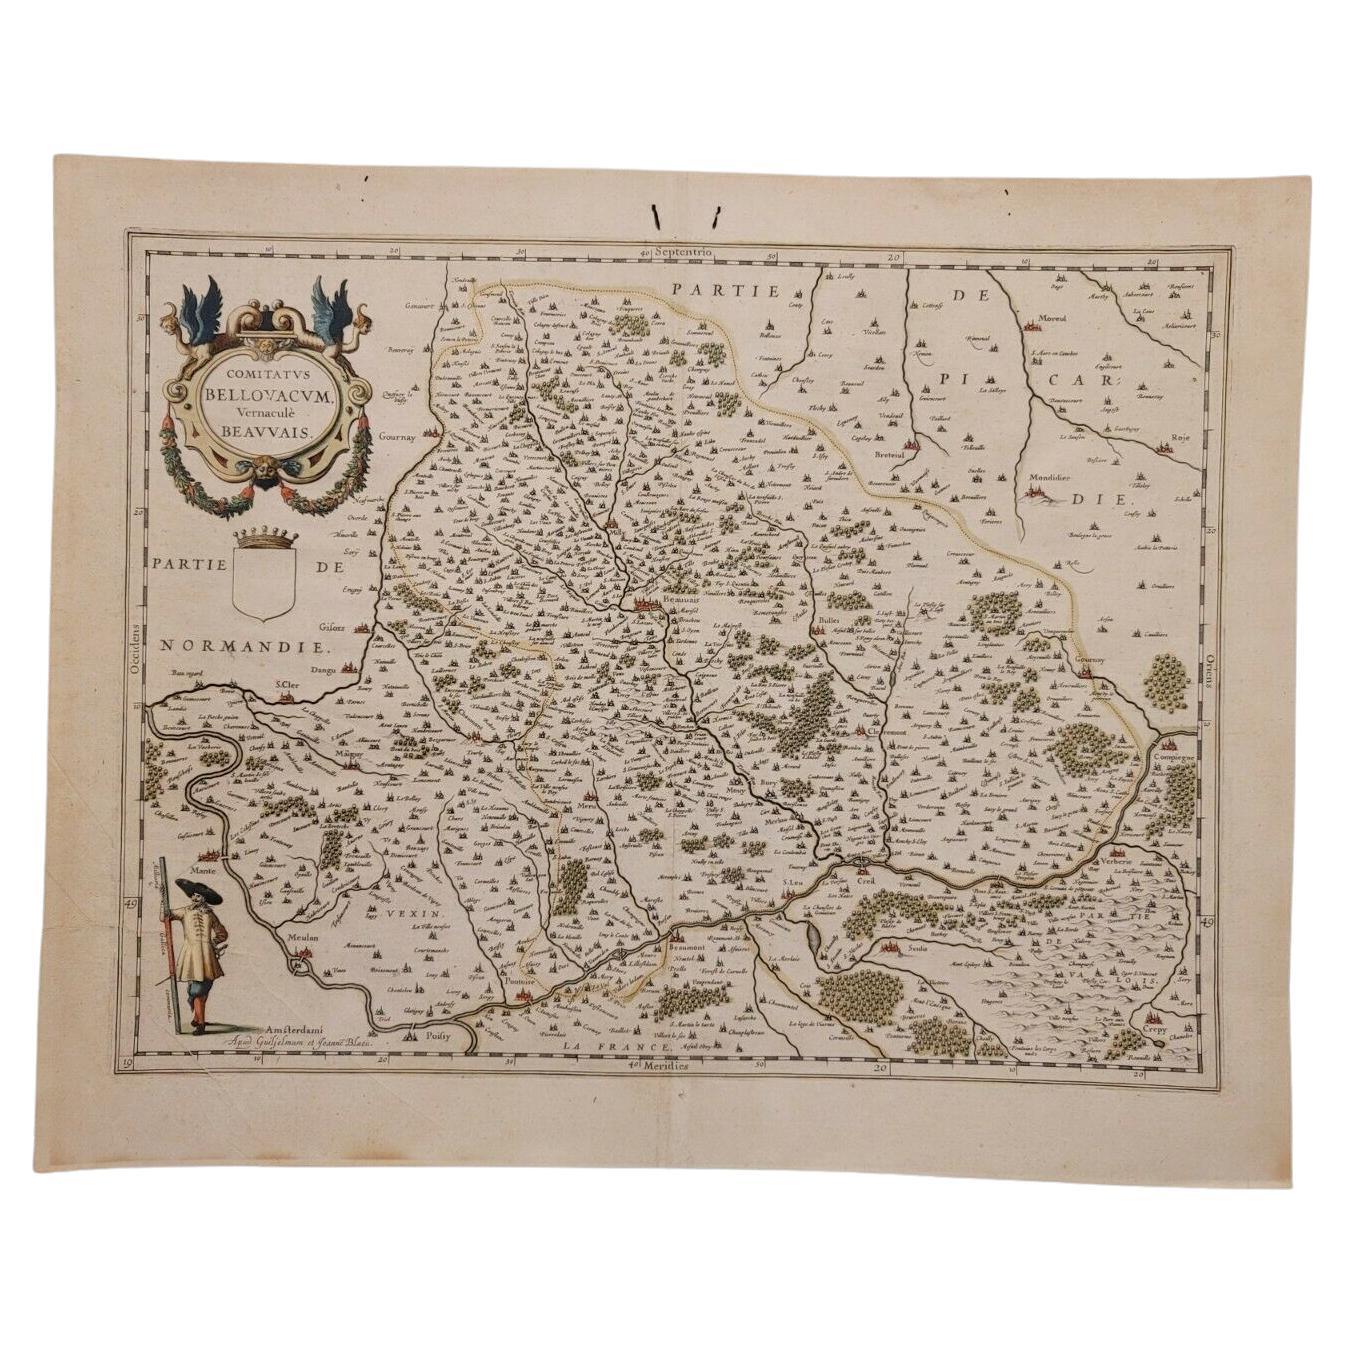 1635 Willem Blaeu Karte von Nordfrankreich „Comitatvs Bellovacvm“ Ric.a08